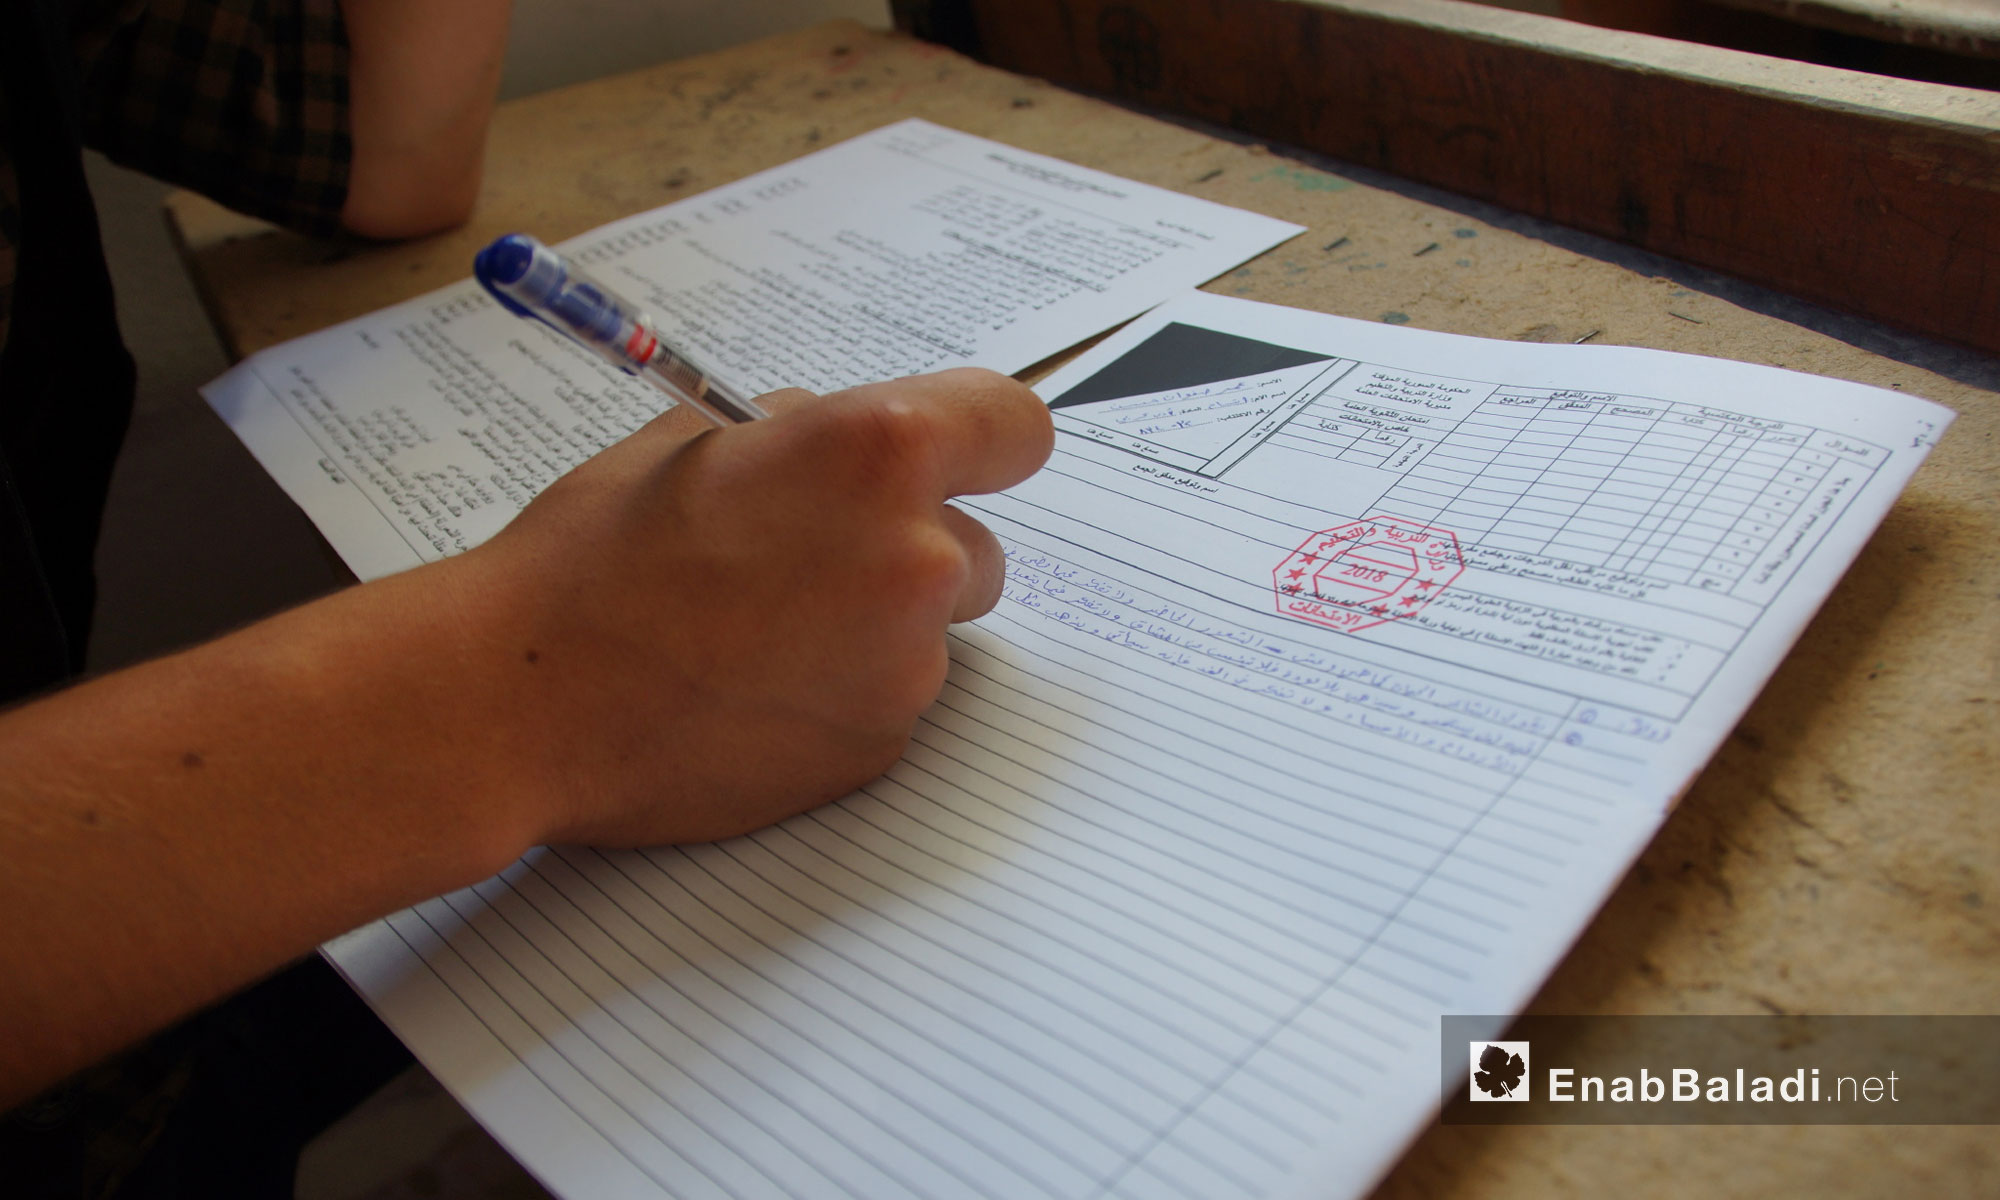 امتحانات شهادتي الإعدادية والثانوية في مدارس تربية حماة الحرة في ريف حماة - 19 حزيران 2018 (عنب بلدي)